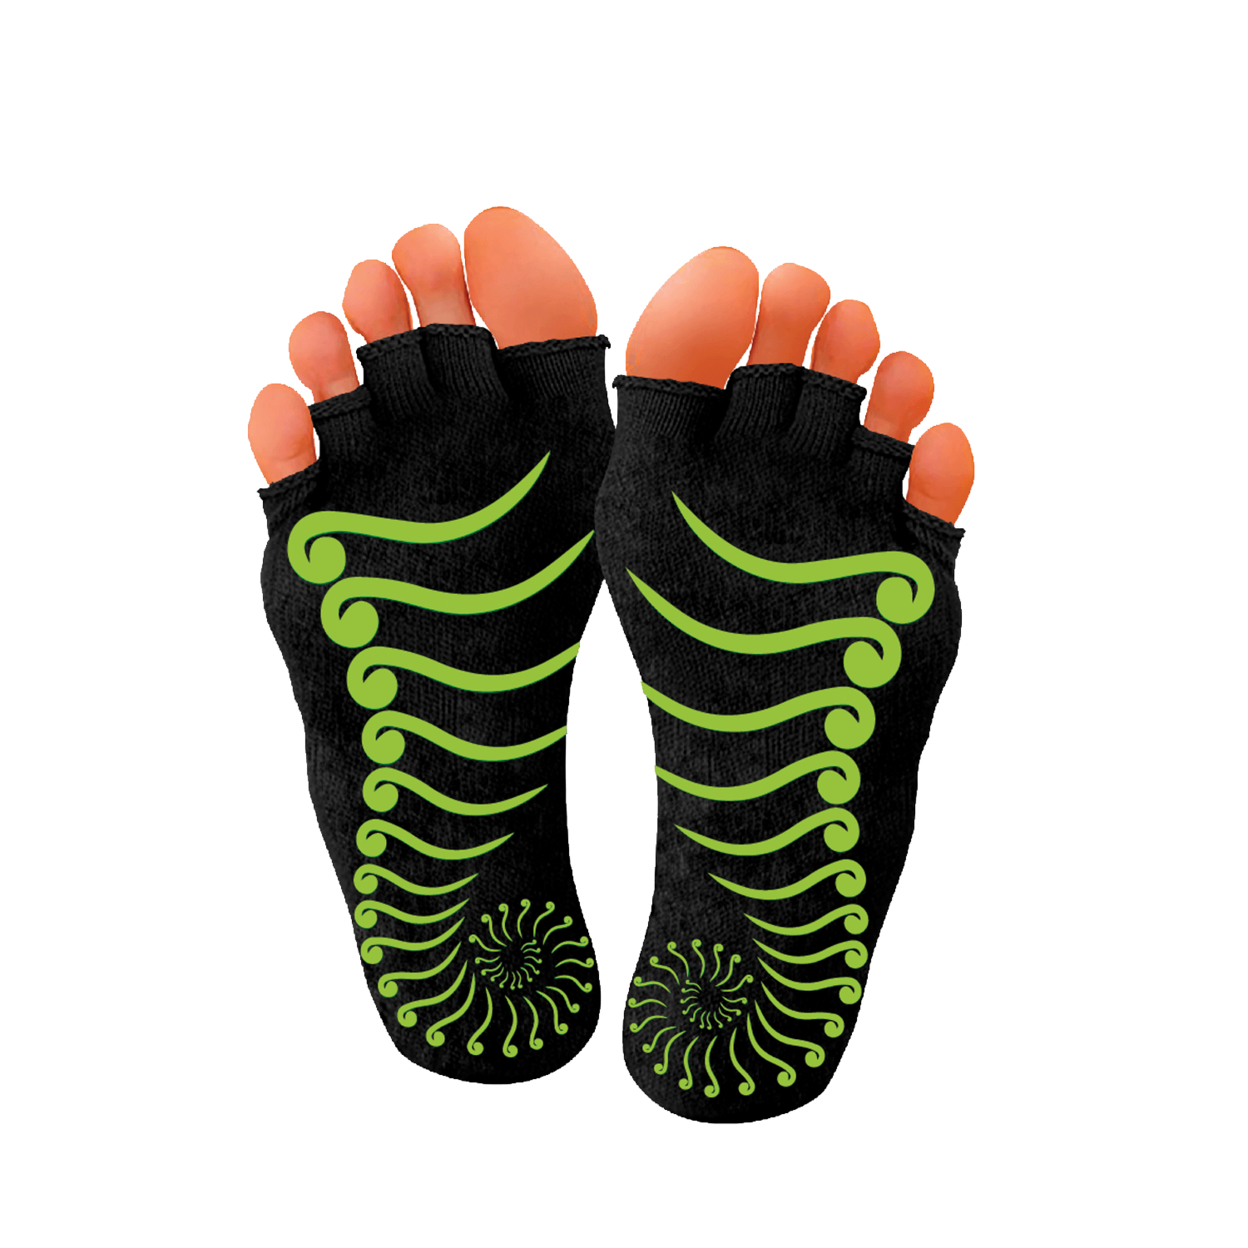 PBLX Non-Slip Yoga Socks No Toe, Medium & Large